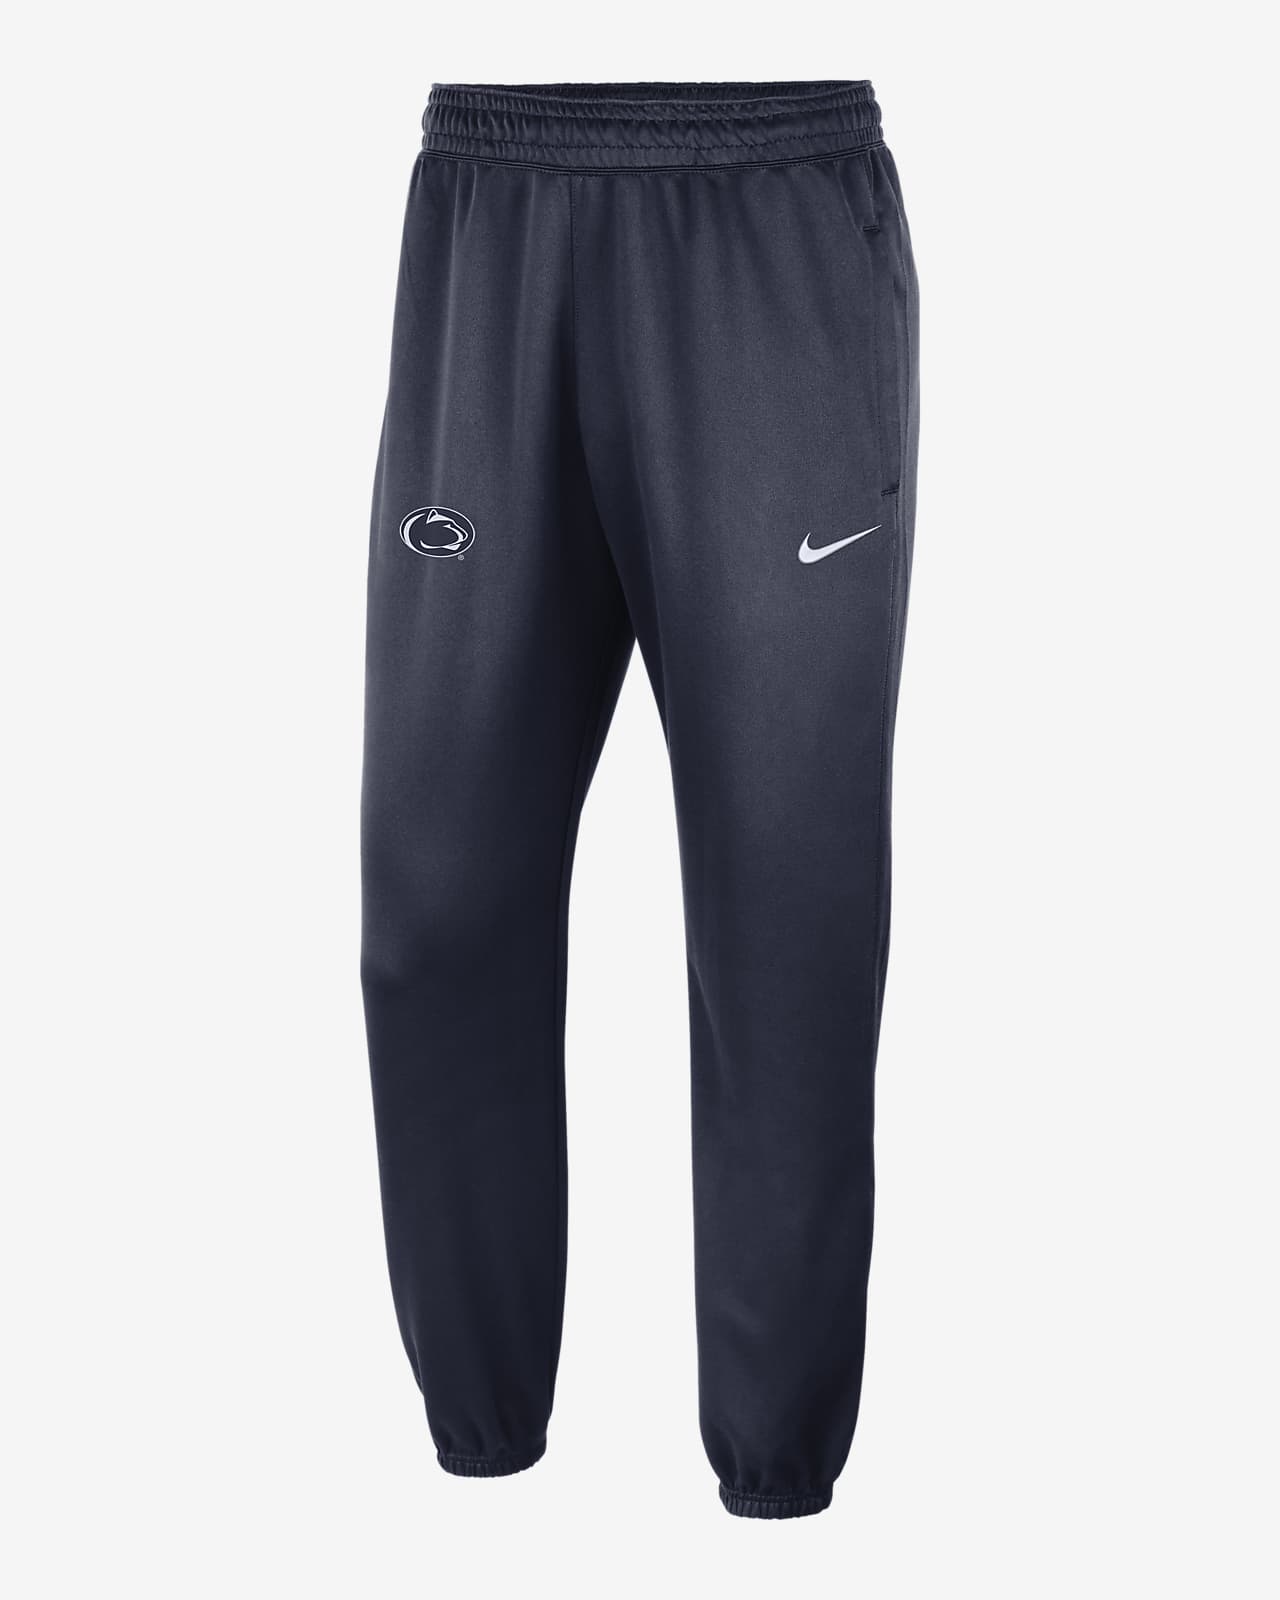 Men's Nike Sweats